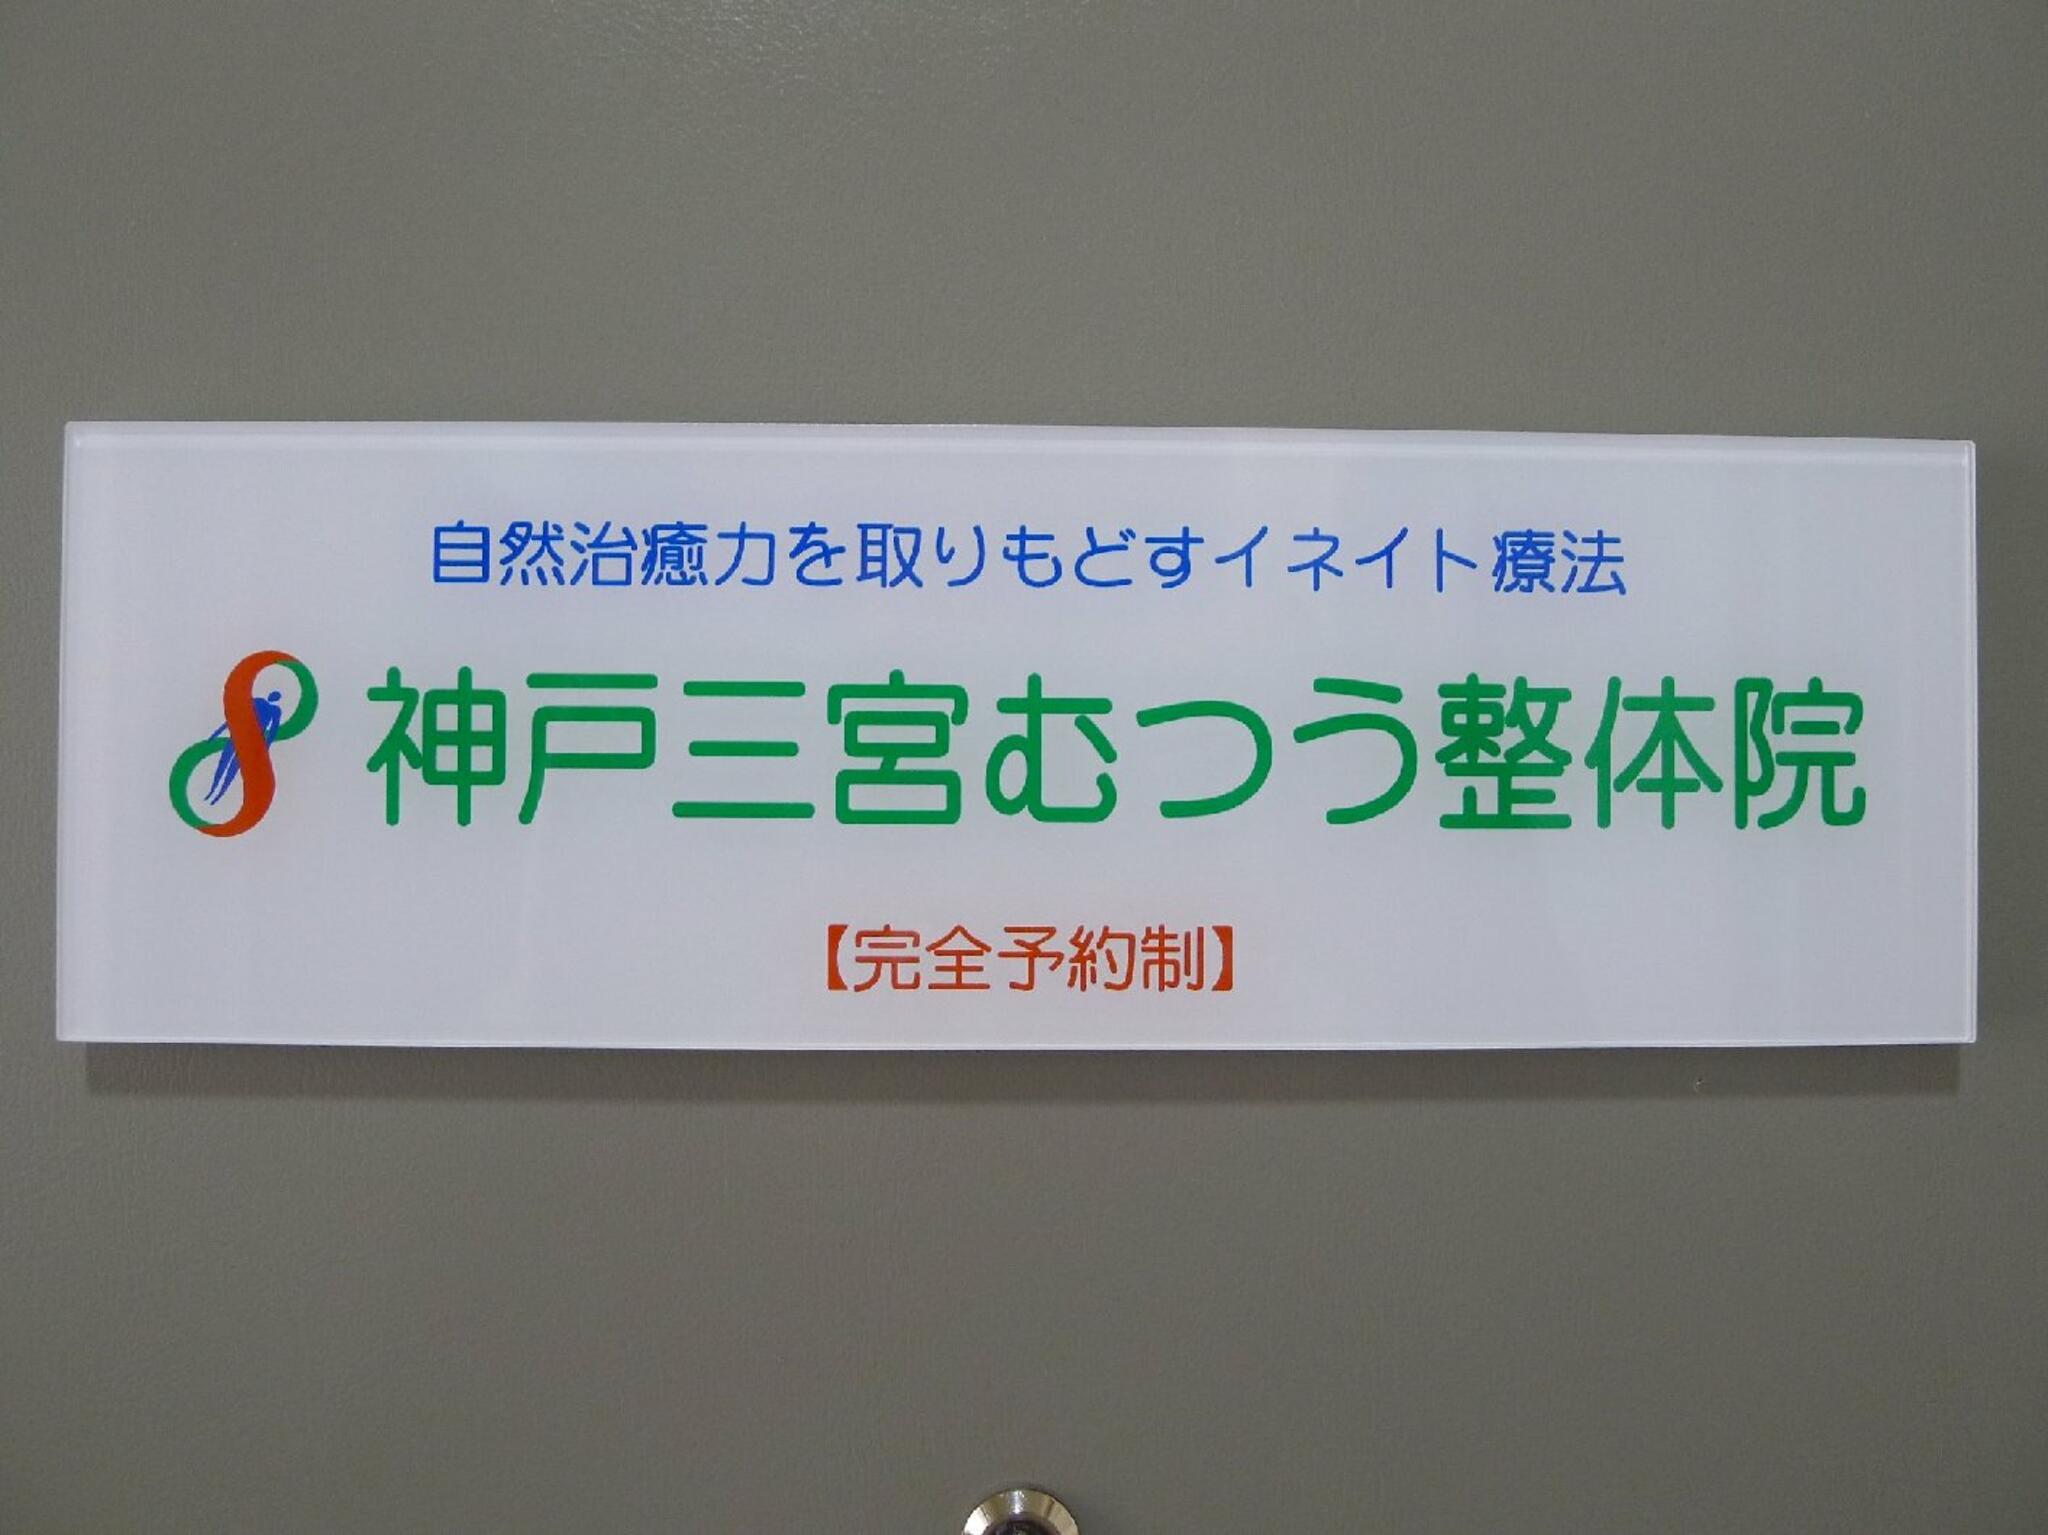 神戸三宮むつう整体院からのお知らせ(本年3月で開業20周年を迎えました)に関する写真